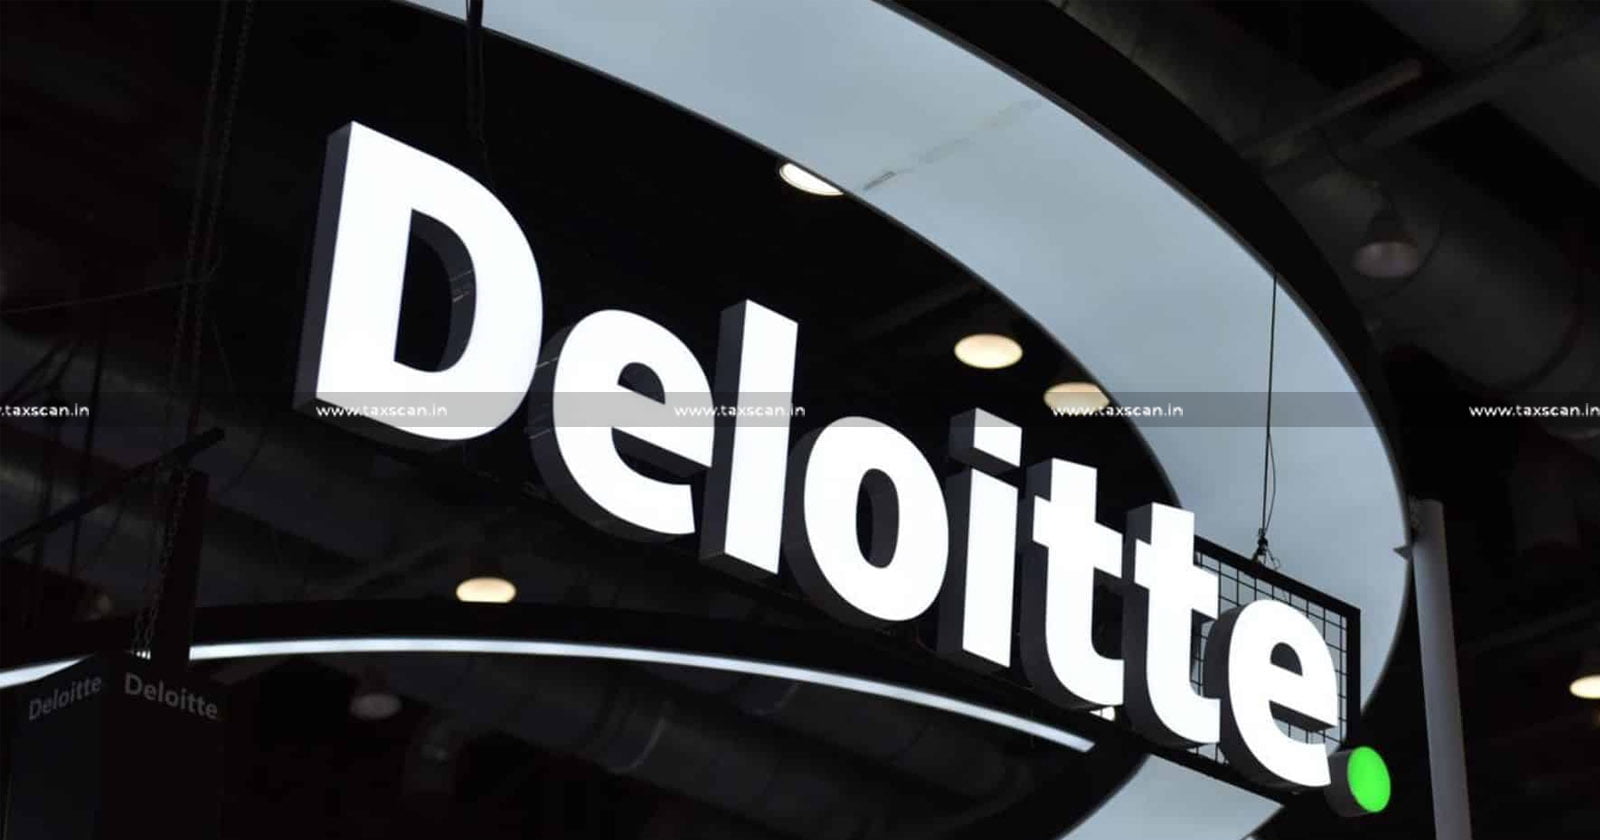 CA Vacancy in Deloitte - CA Vacancy - CA - Vacancy in Deloitte - Vacancy - Deloitte - Taxscan